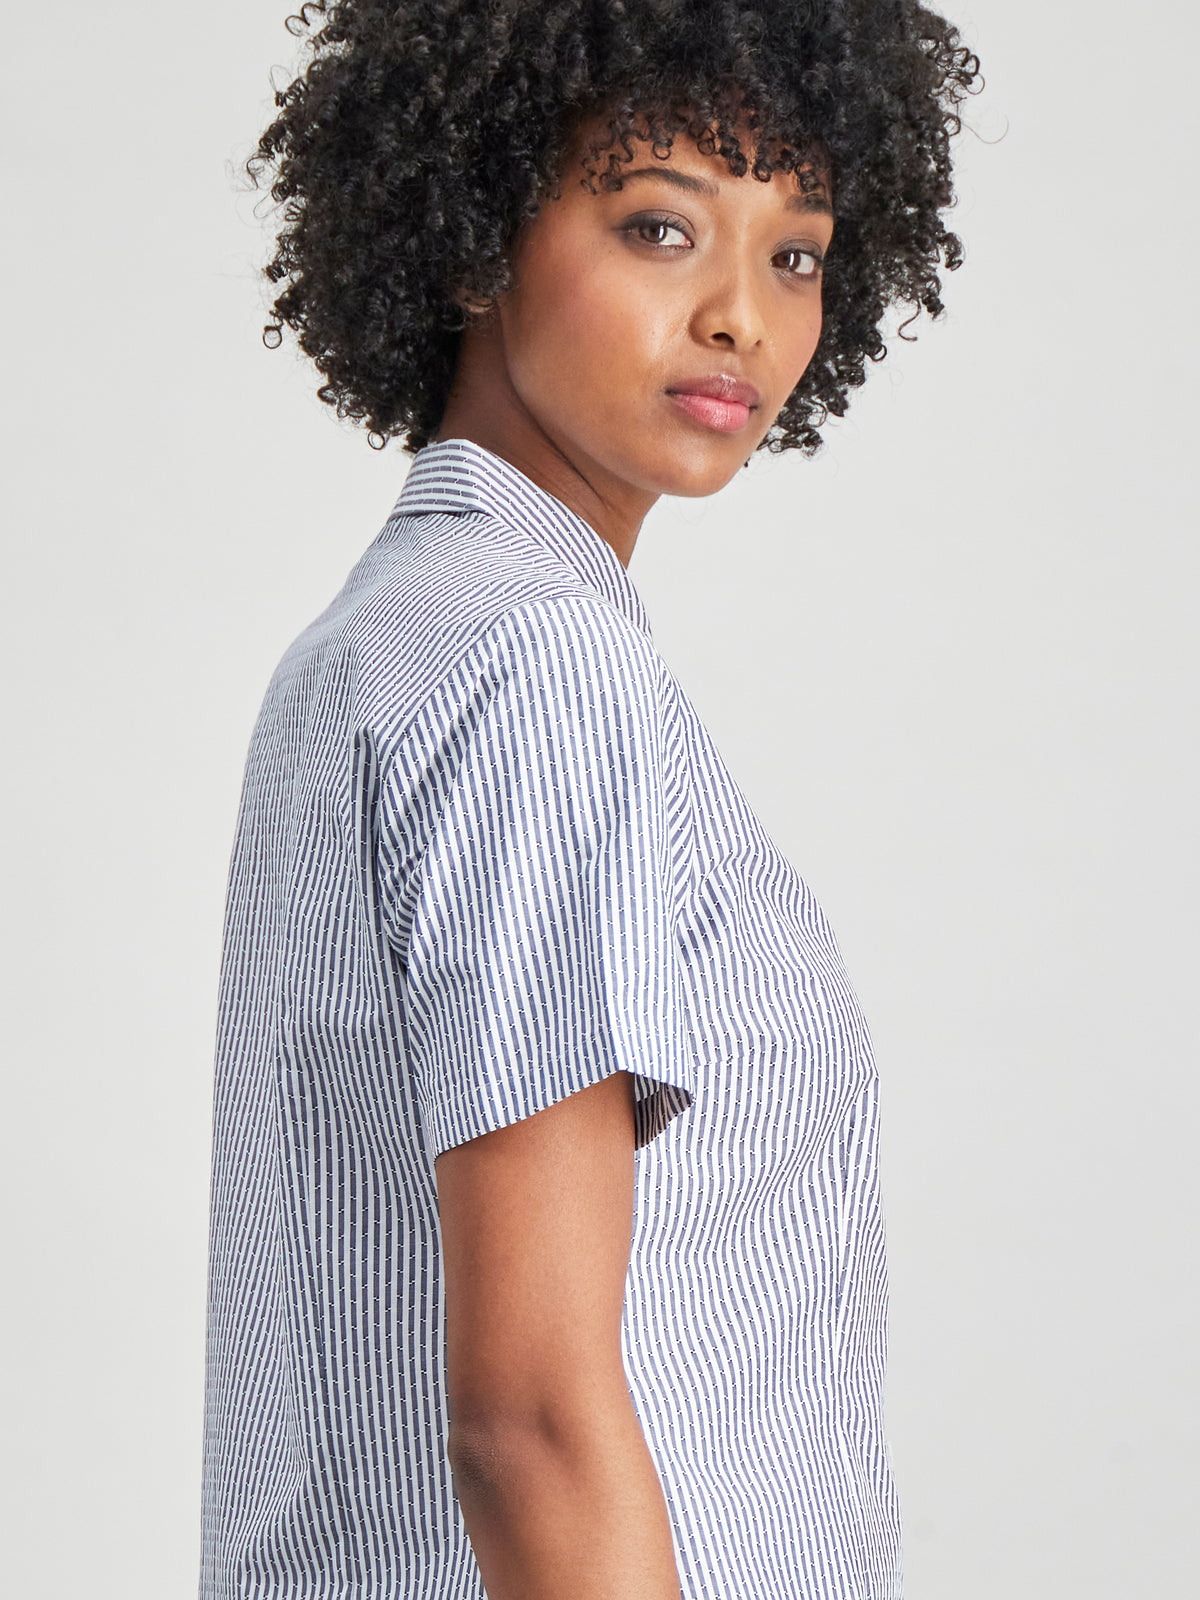 Kerry cotton shirt - blk stripe